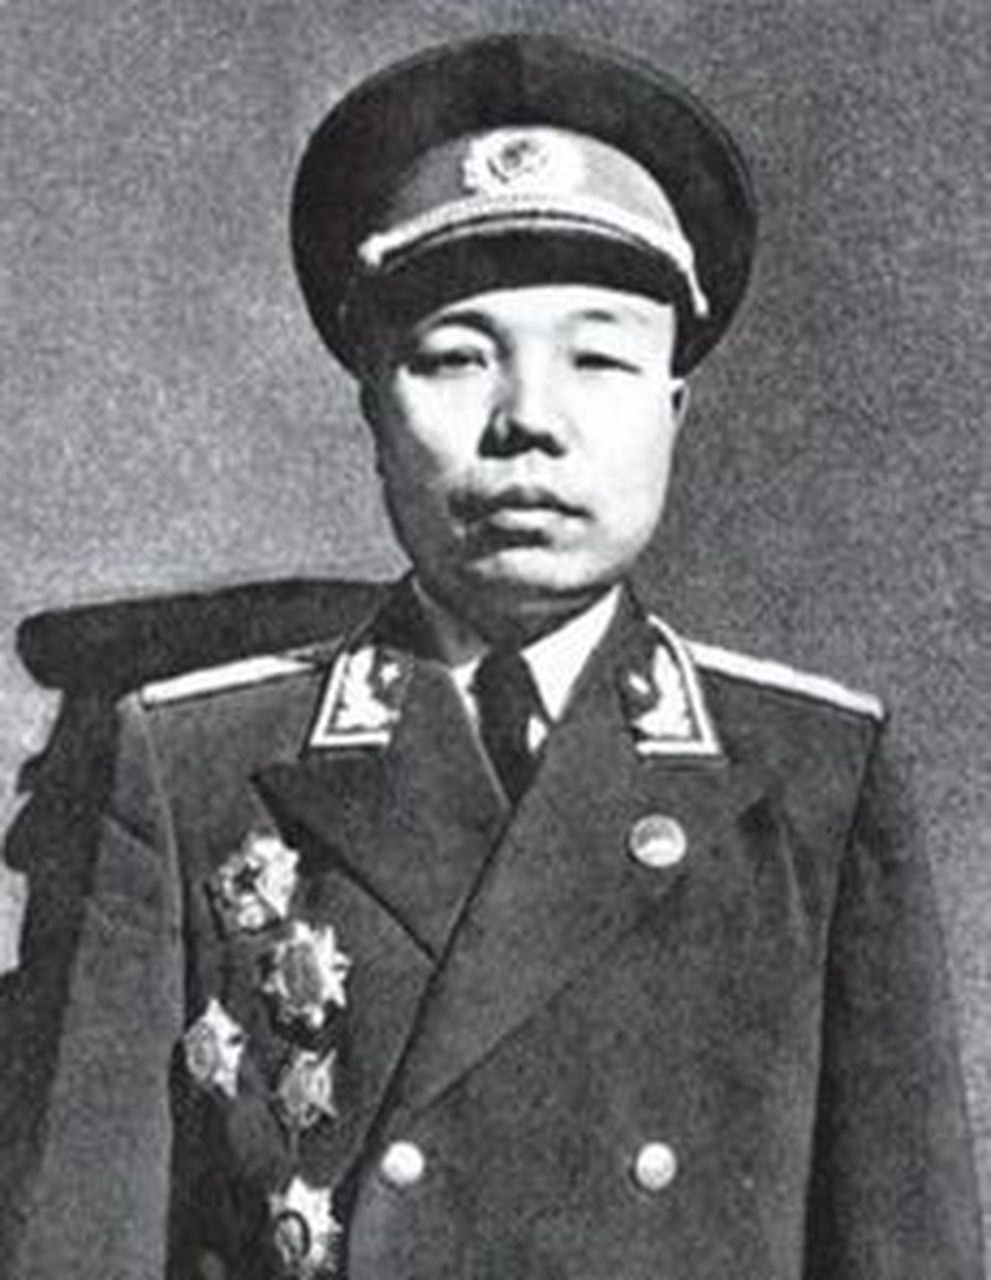 开国上将肖华同志12岁参加革命,16岁当"少共国际师"政委,人称"天才".